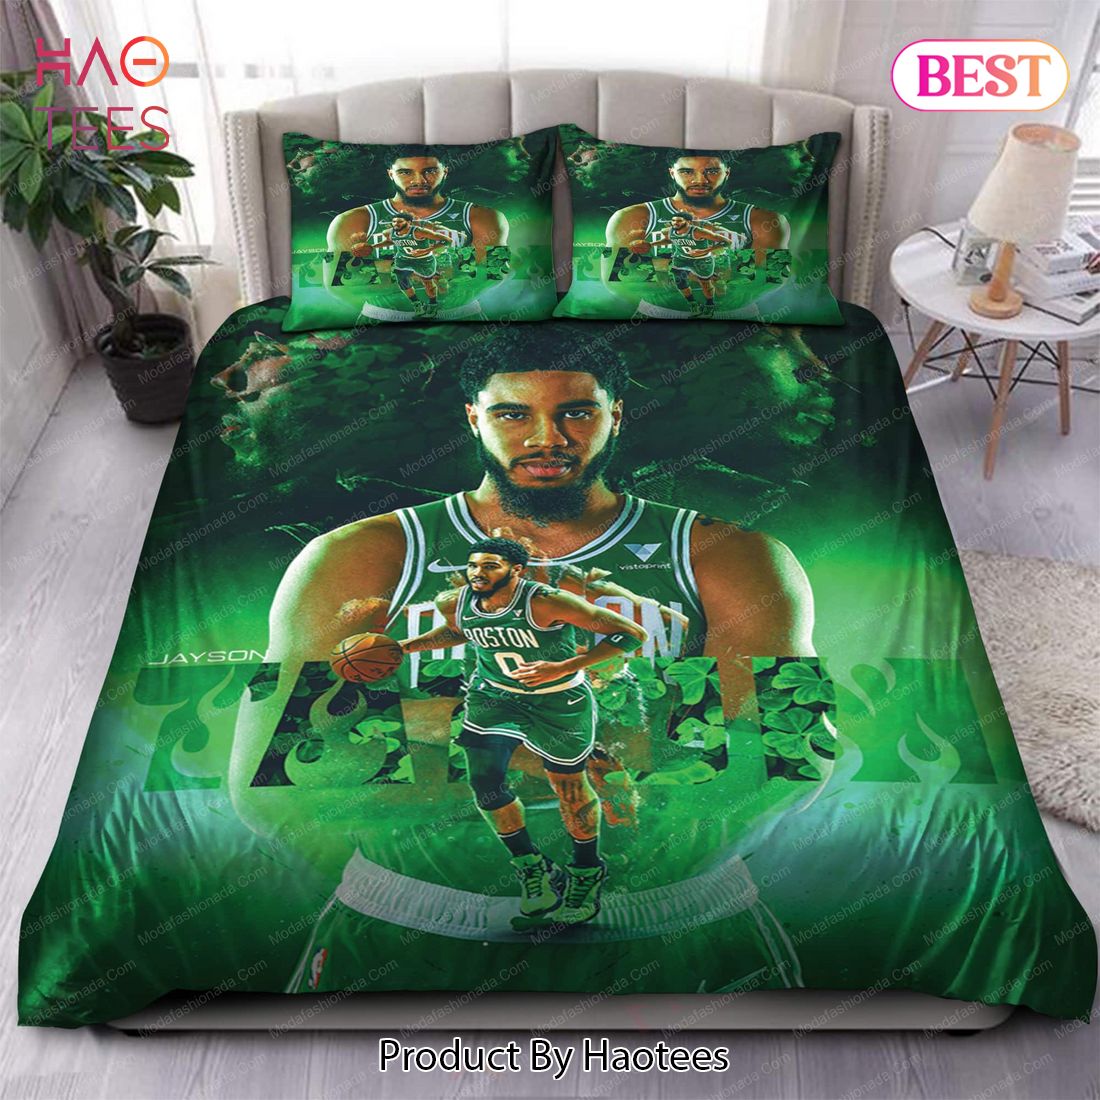 Buy Jayson Tatum Boston Celtics NBA 126 Bedding Sets Bed Sets, Bedroom Sets, Comforter Sets, Duvet Cover, Bedspread